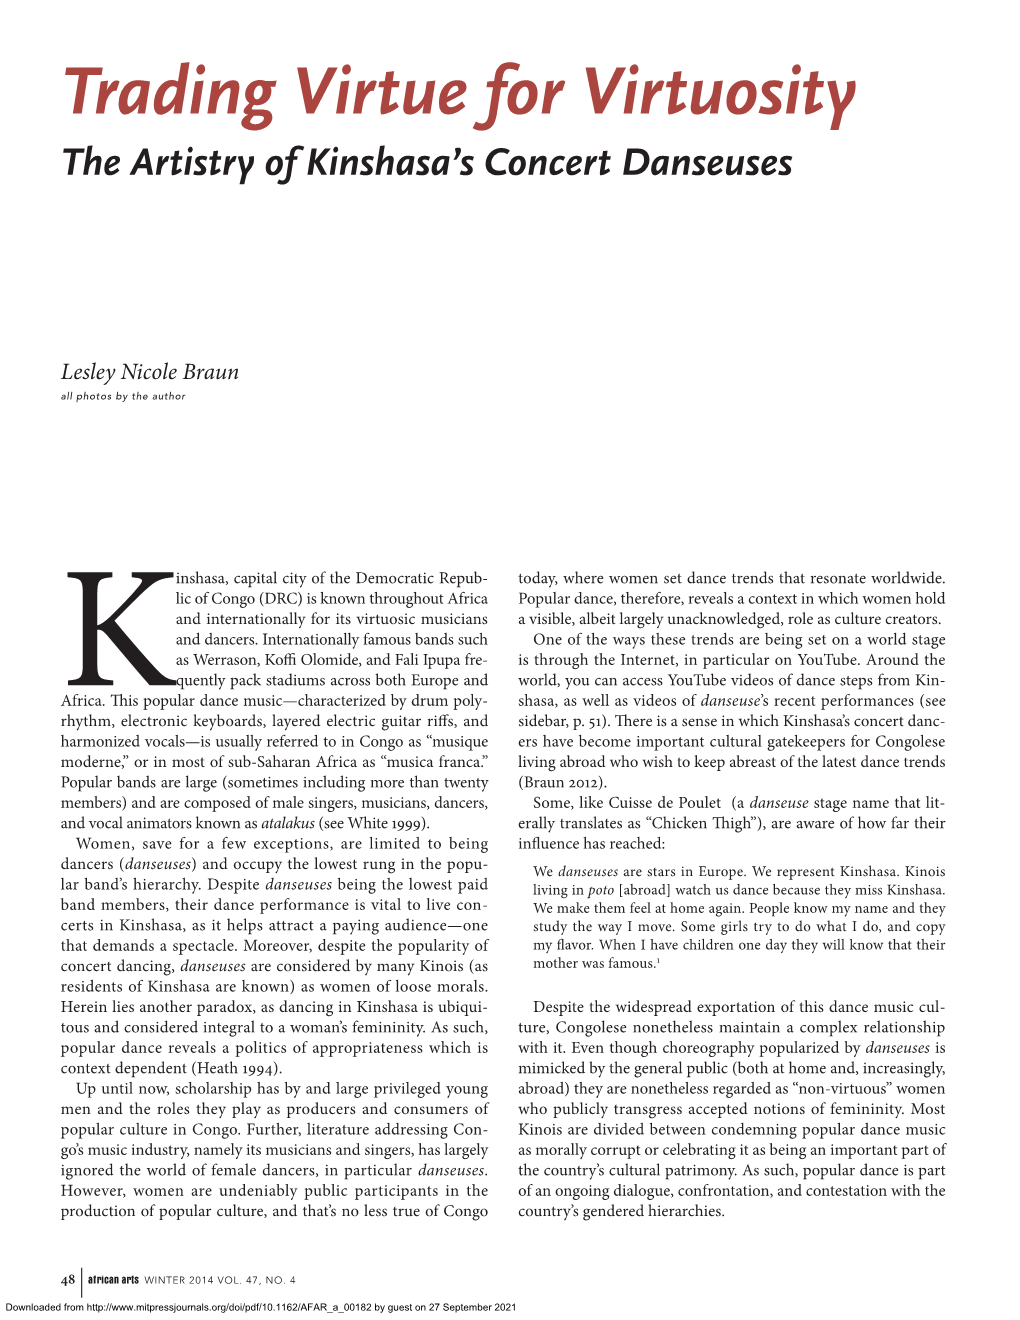 Trading Virtue for Virtuosity the Artistry of Kinshasa’S Concert Danseuses